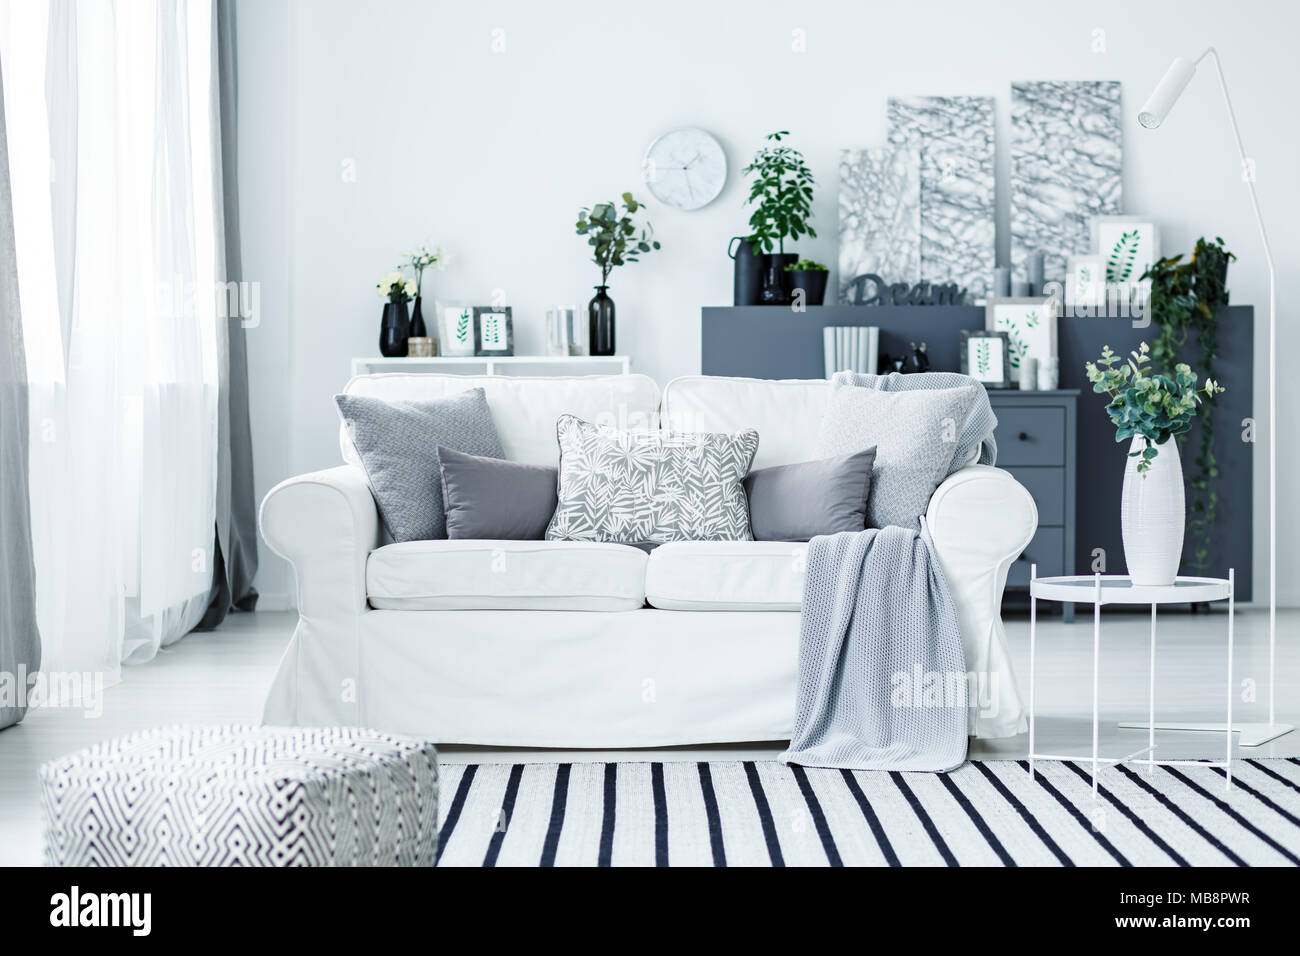 Blanco acogedor sofá y una manta rayas en un elegante salón moderno  interior con muebles de color gris y decoraciones Fotografía de stock -  Alamy